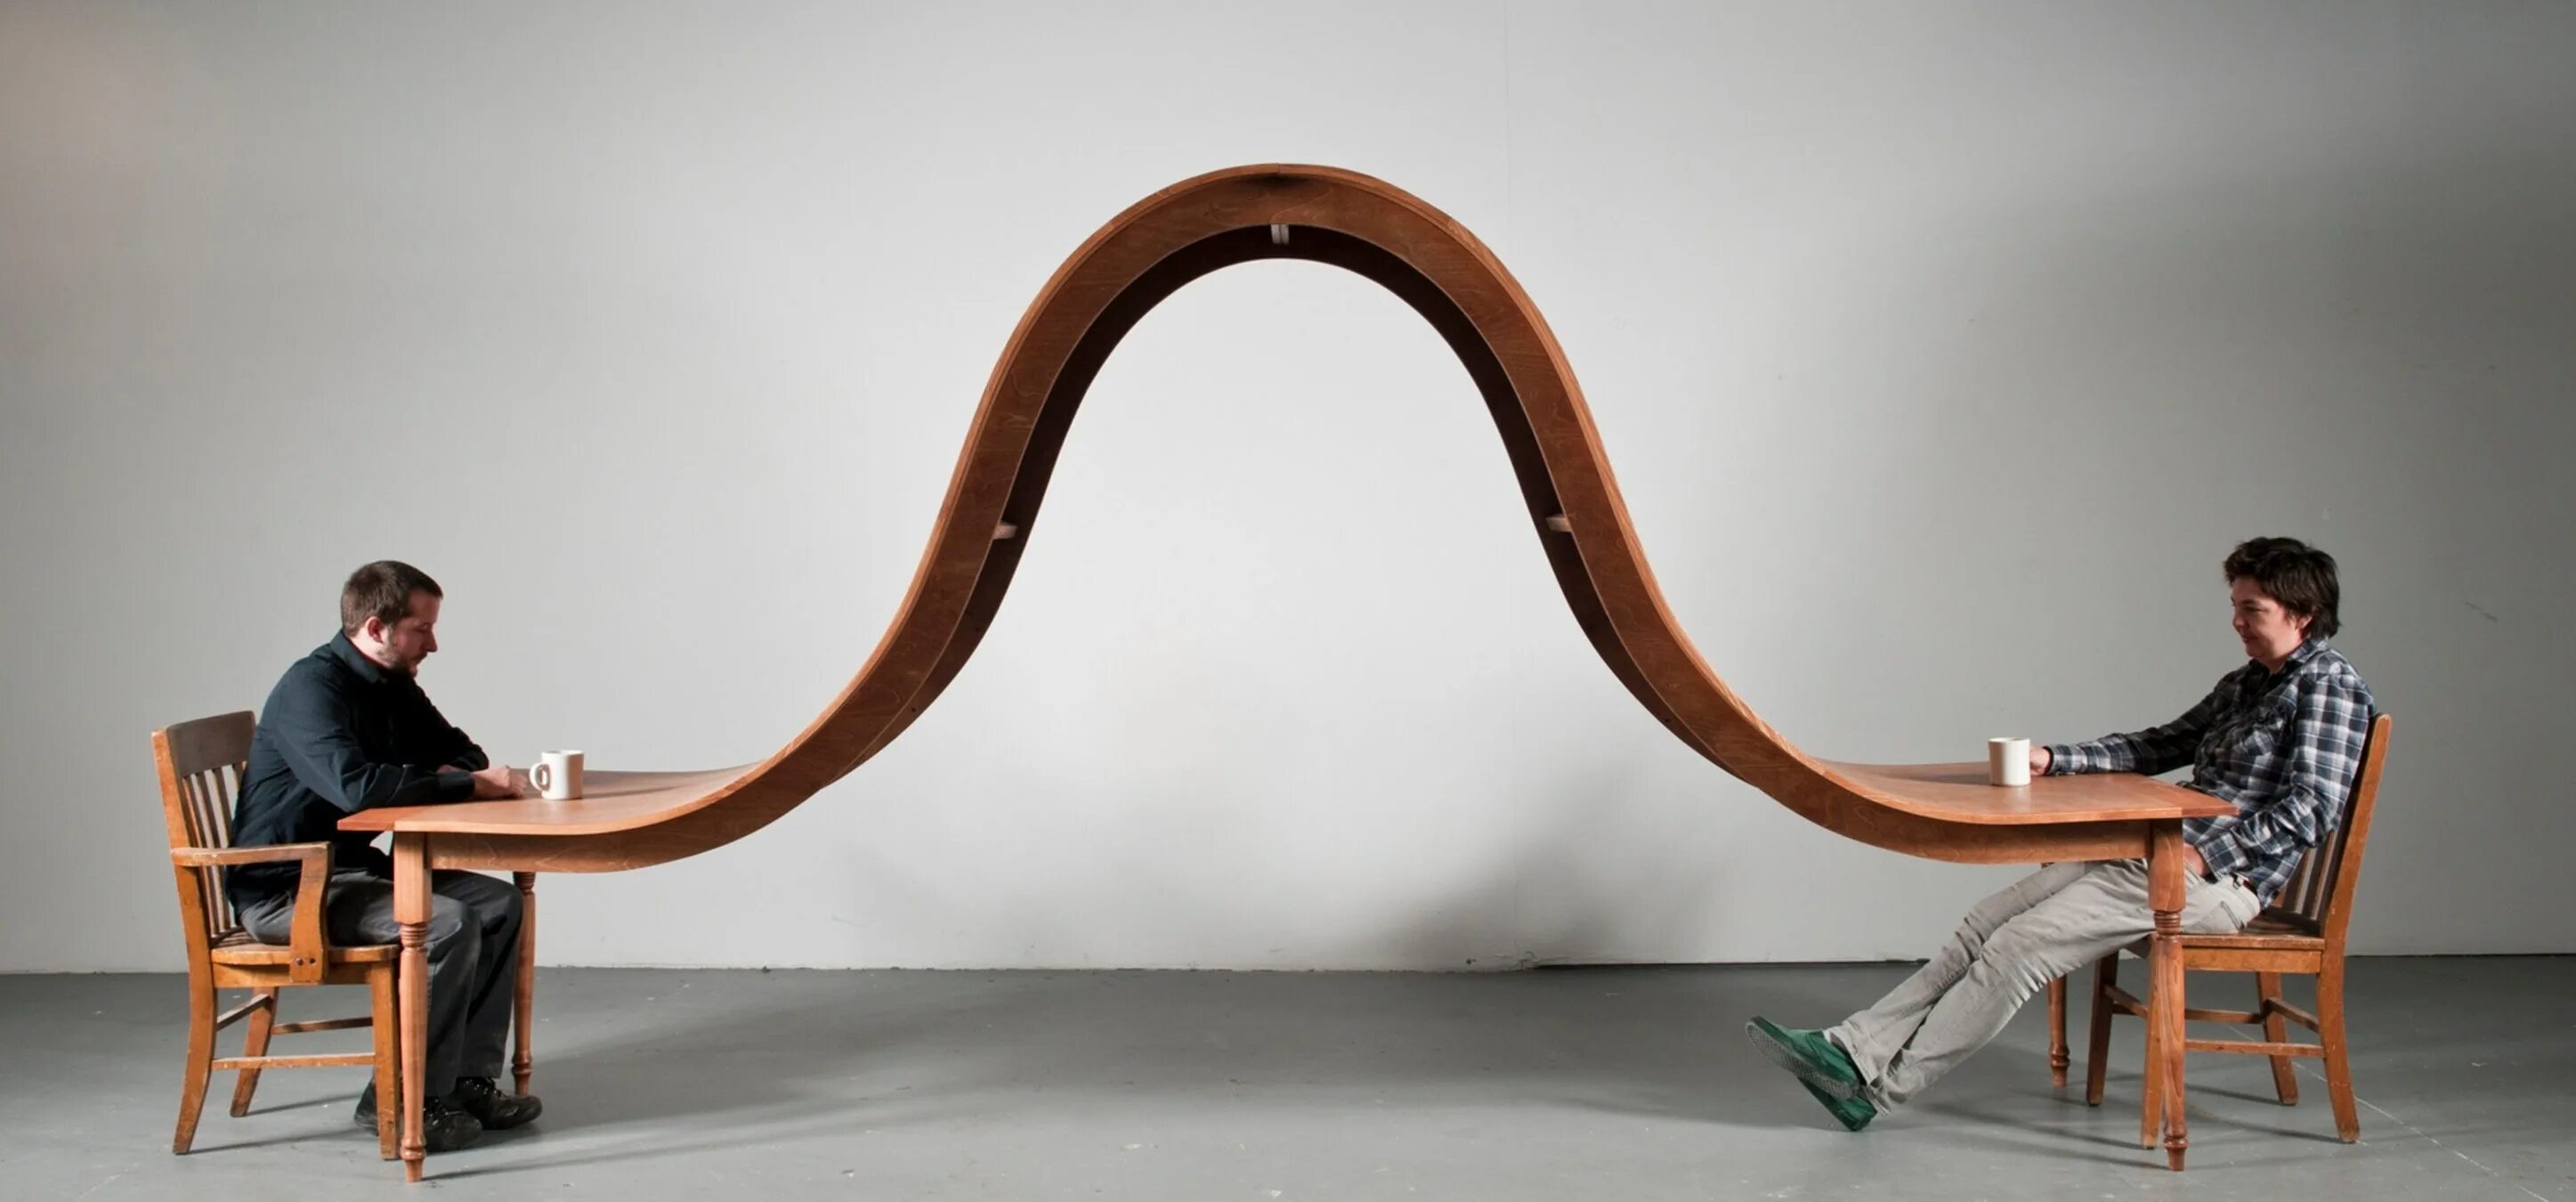 Нестандартный опыт. Скульптуры Майкла бейтса столы. Необычная дизайнерская мебель. Необычные дизайнерские решения.